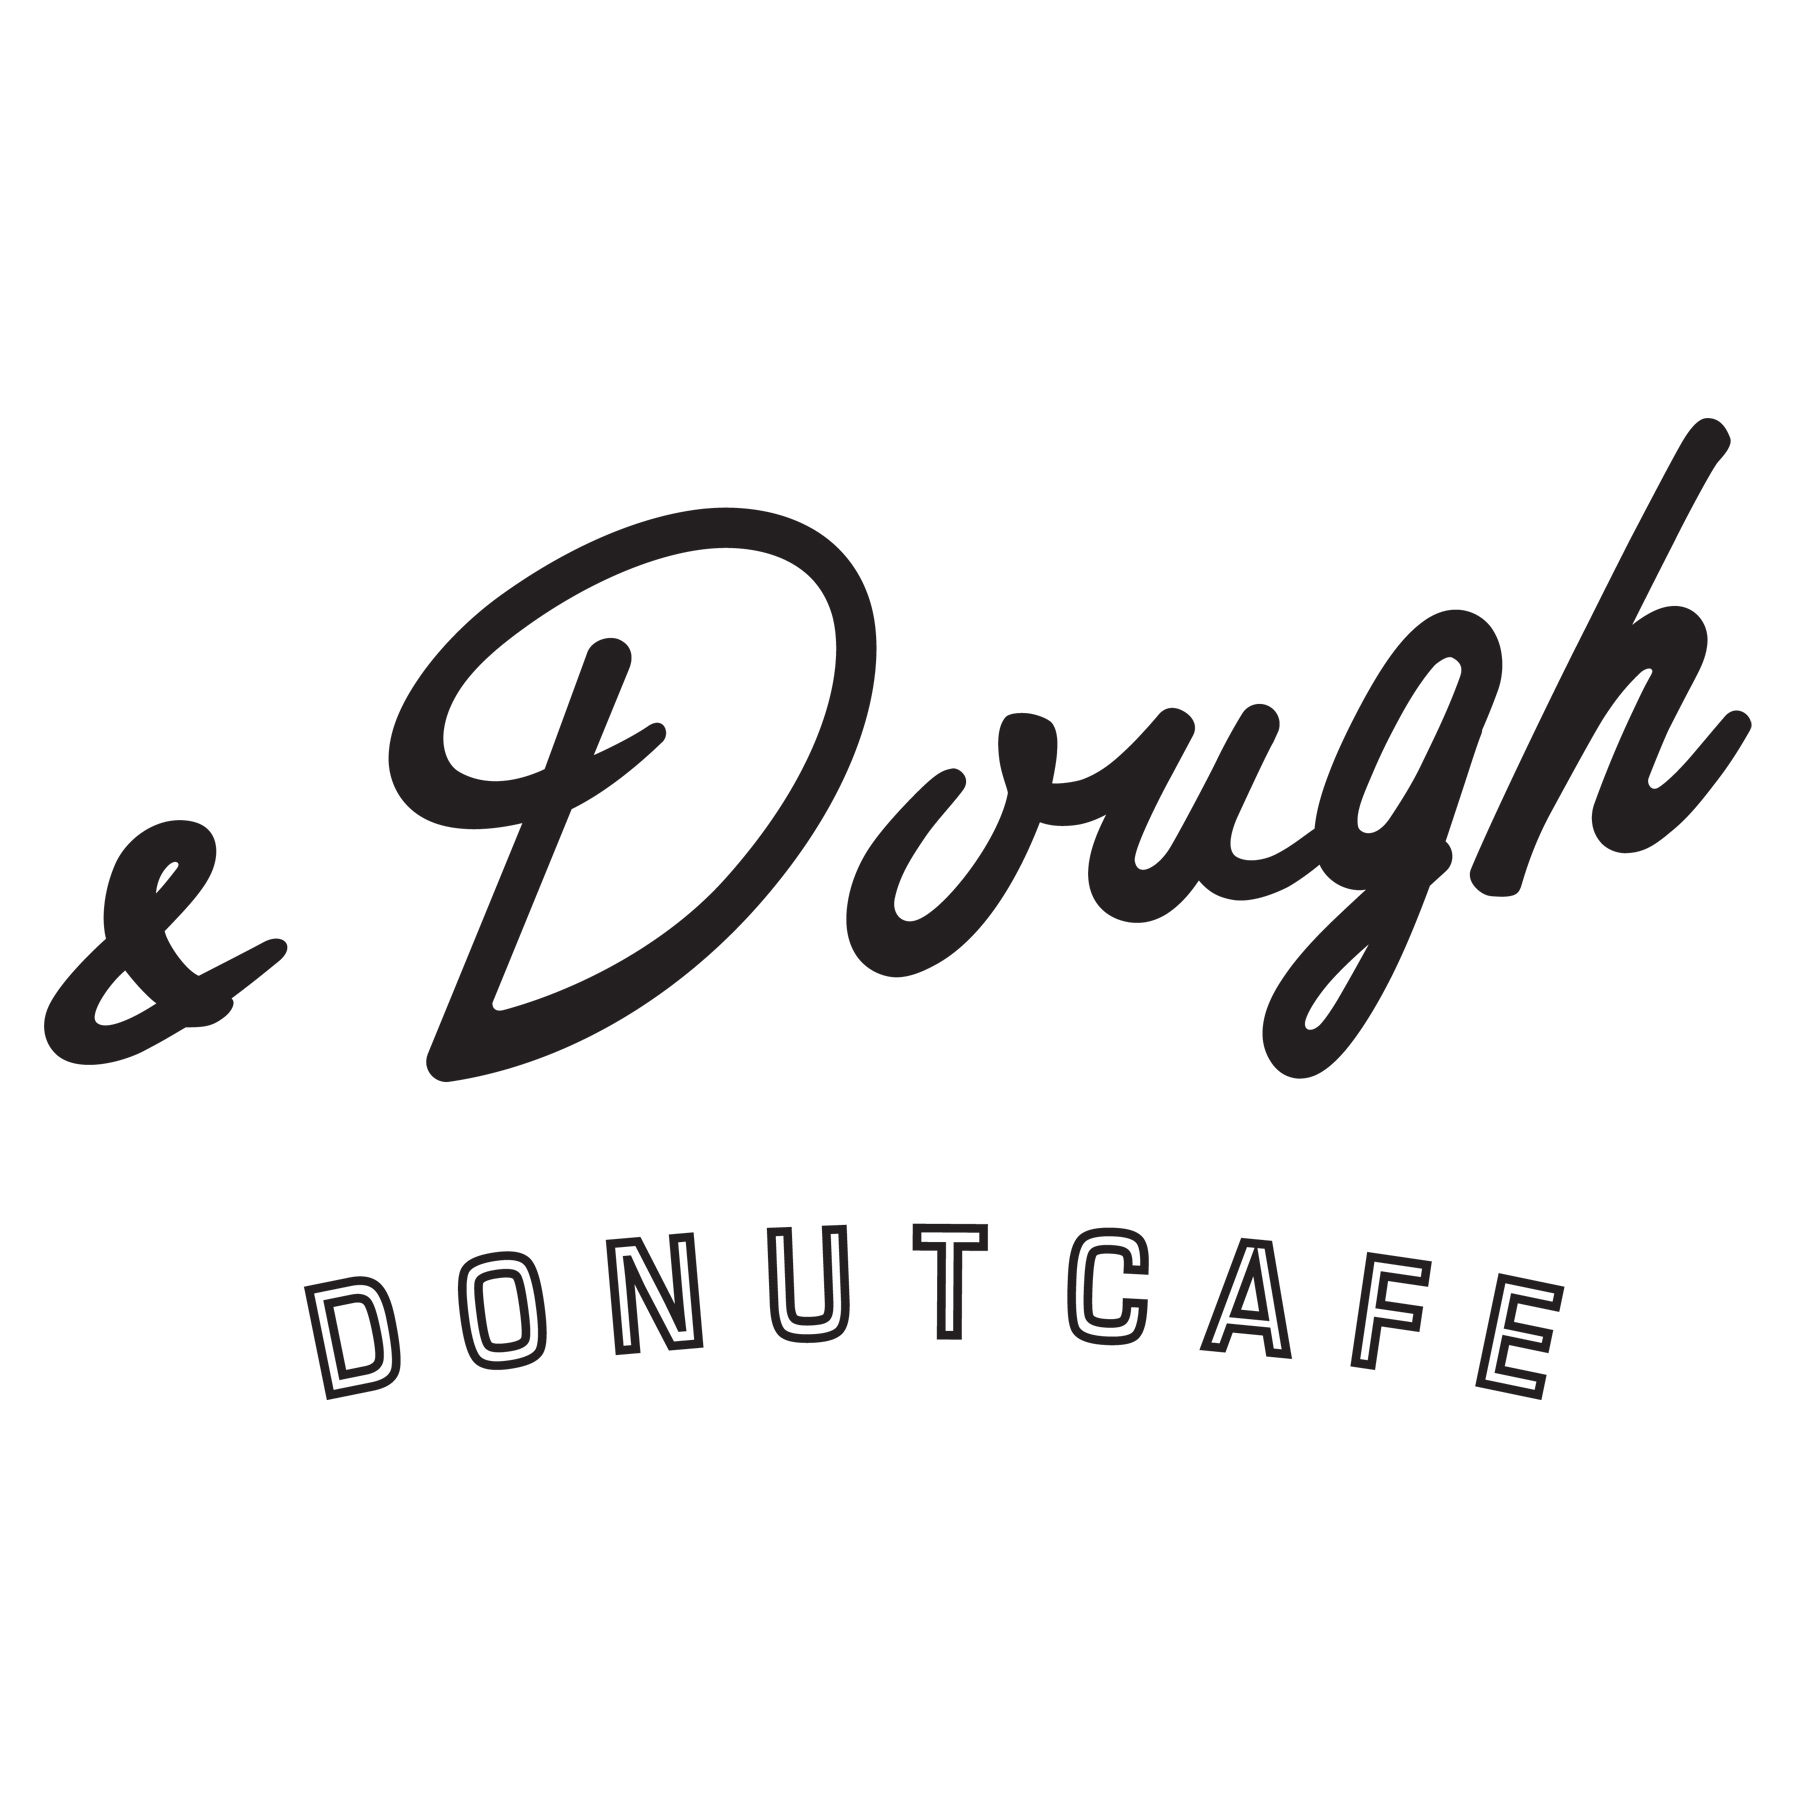 & Dough Cafe